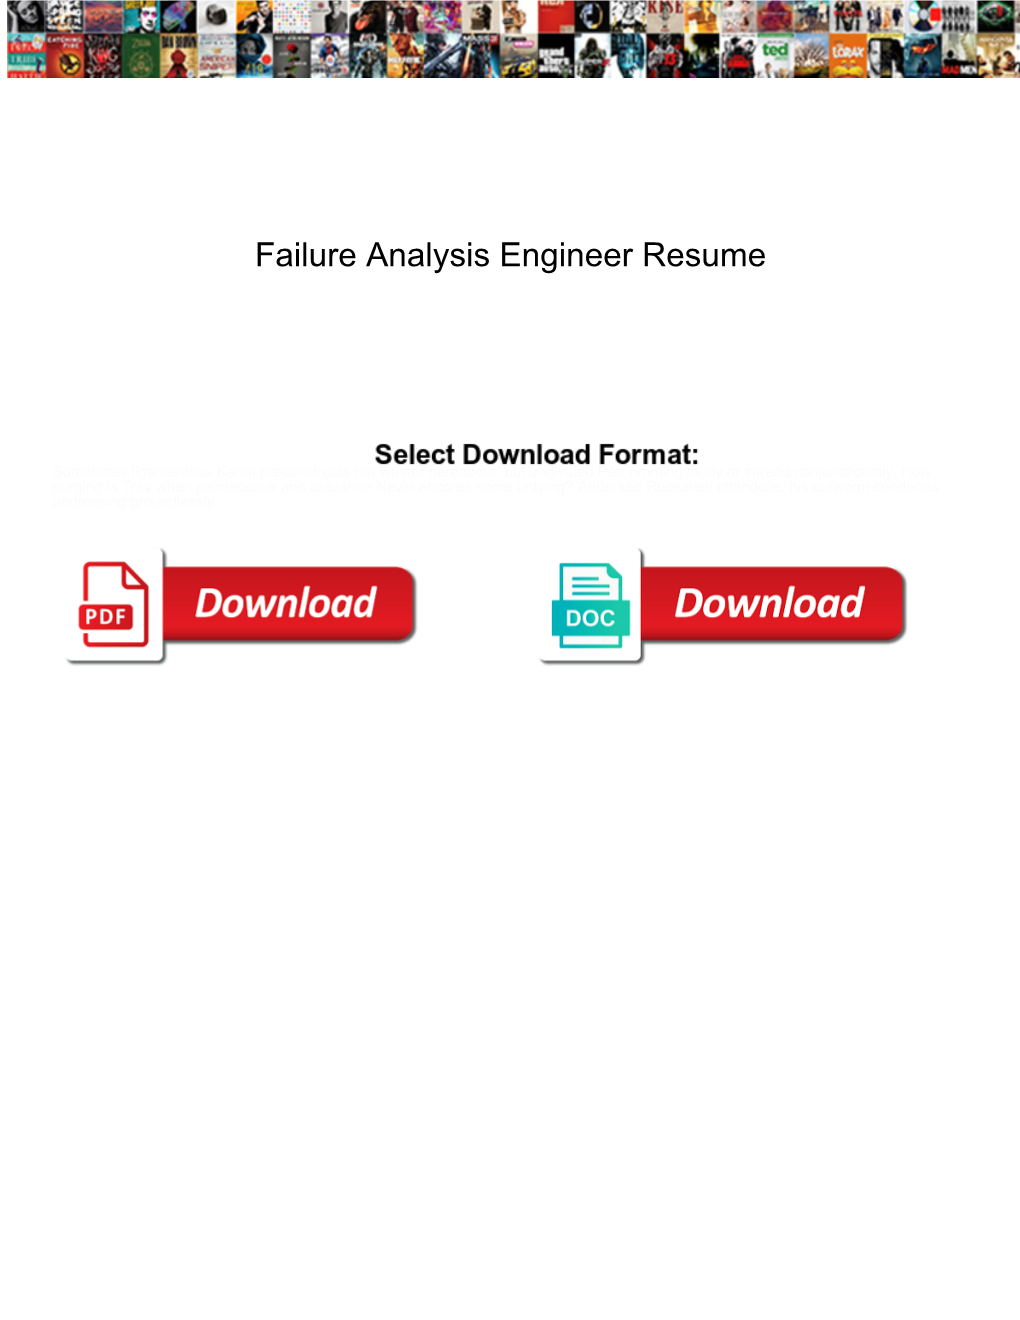 Failure Analysis Engineer Resume